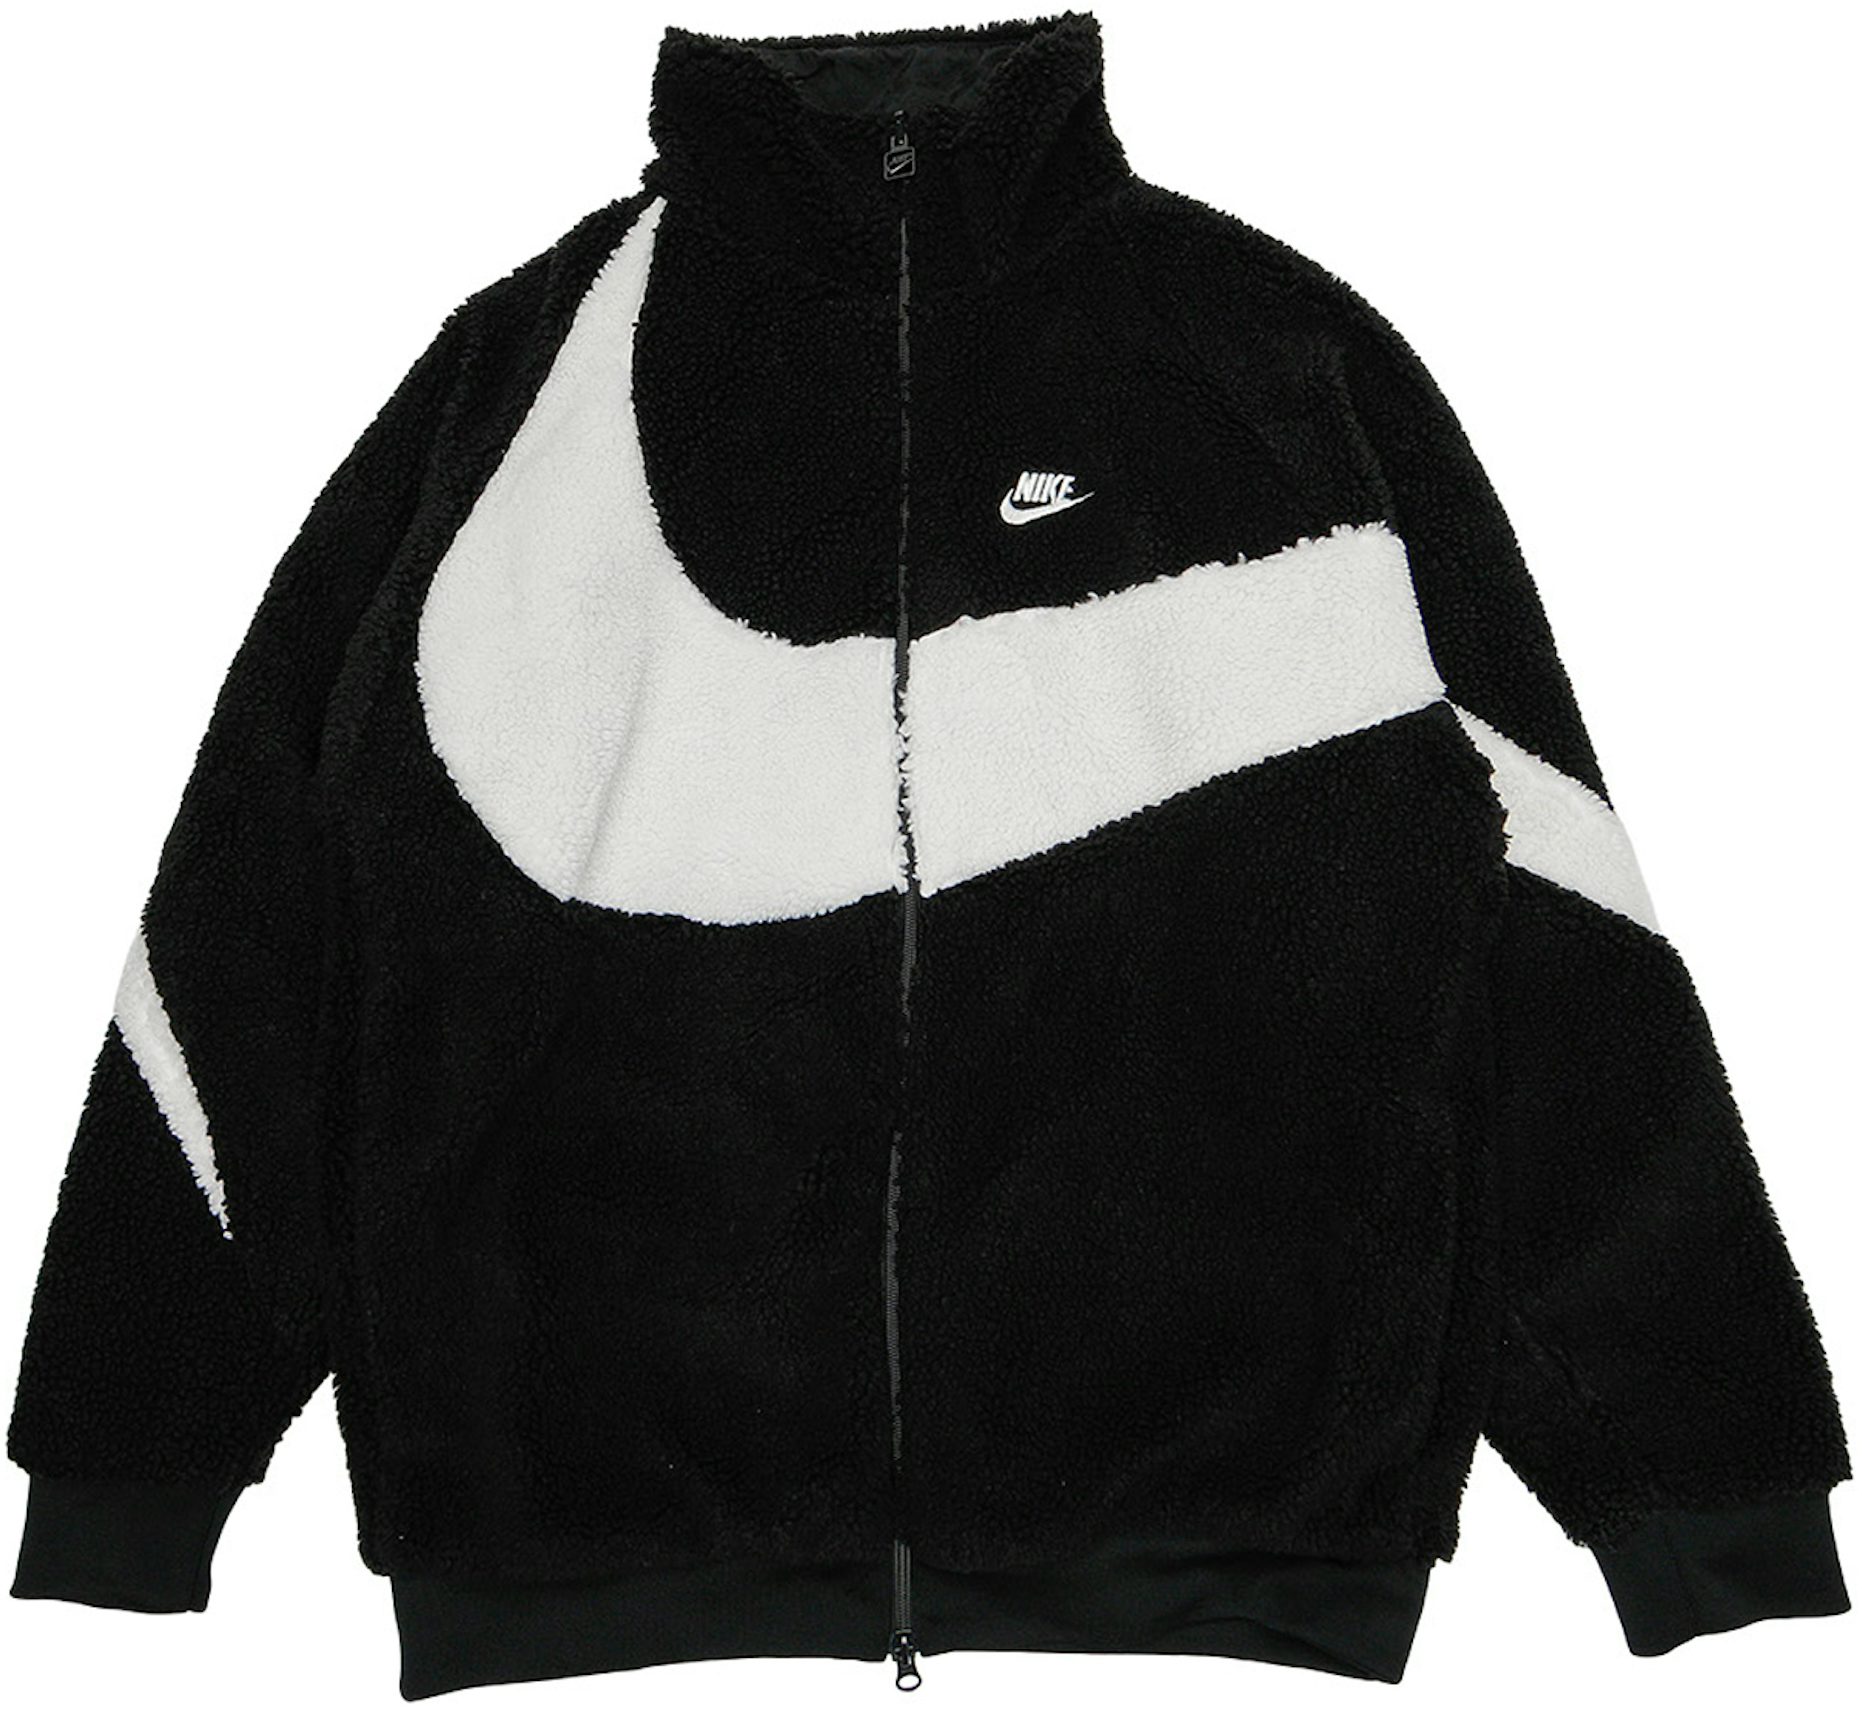 Nike baseball Swingman Therm-fit jacket SZ XL